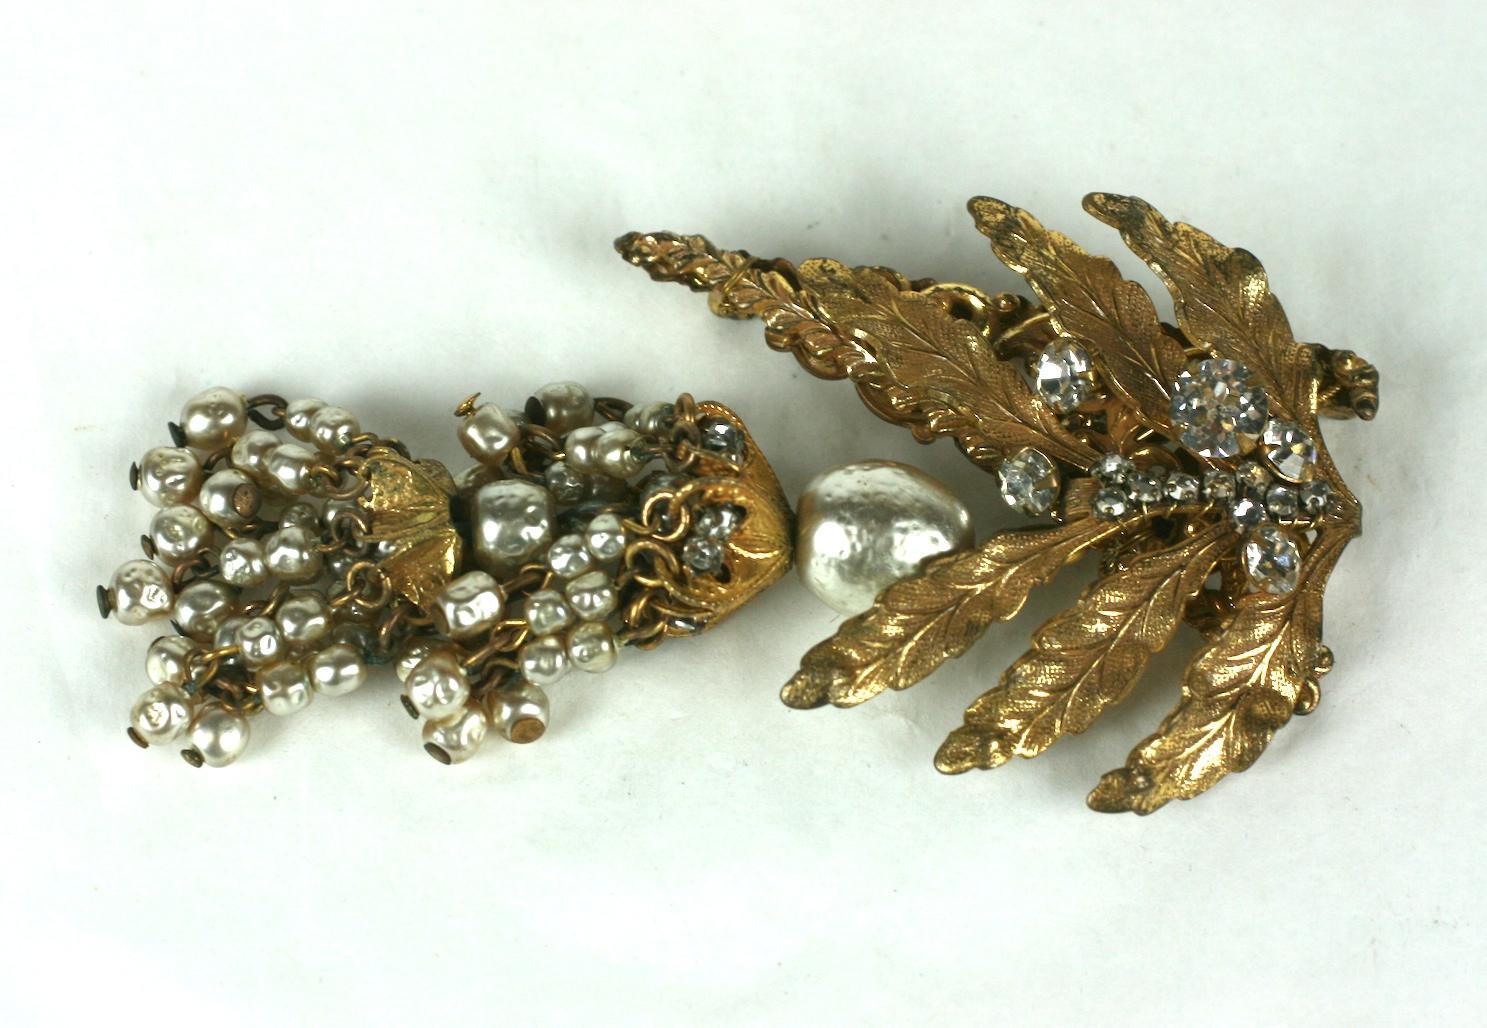 Ravissante broche en feuilles et perles de Haskell datant des années 1940. Les fausses perles élaborées signées Haskell créent un pompon à étages suspendu à une broche en forme de feuille dorée décorée de cristaux cousus à la main.  
Excellent état.